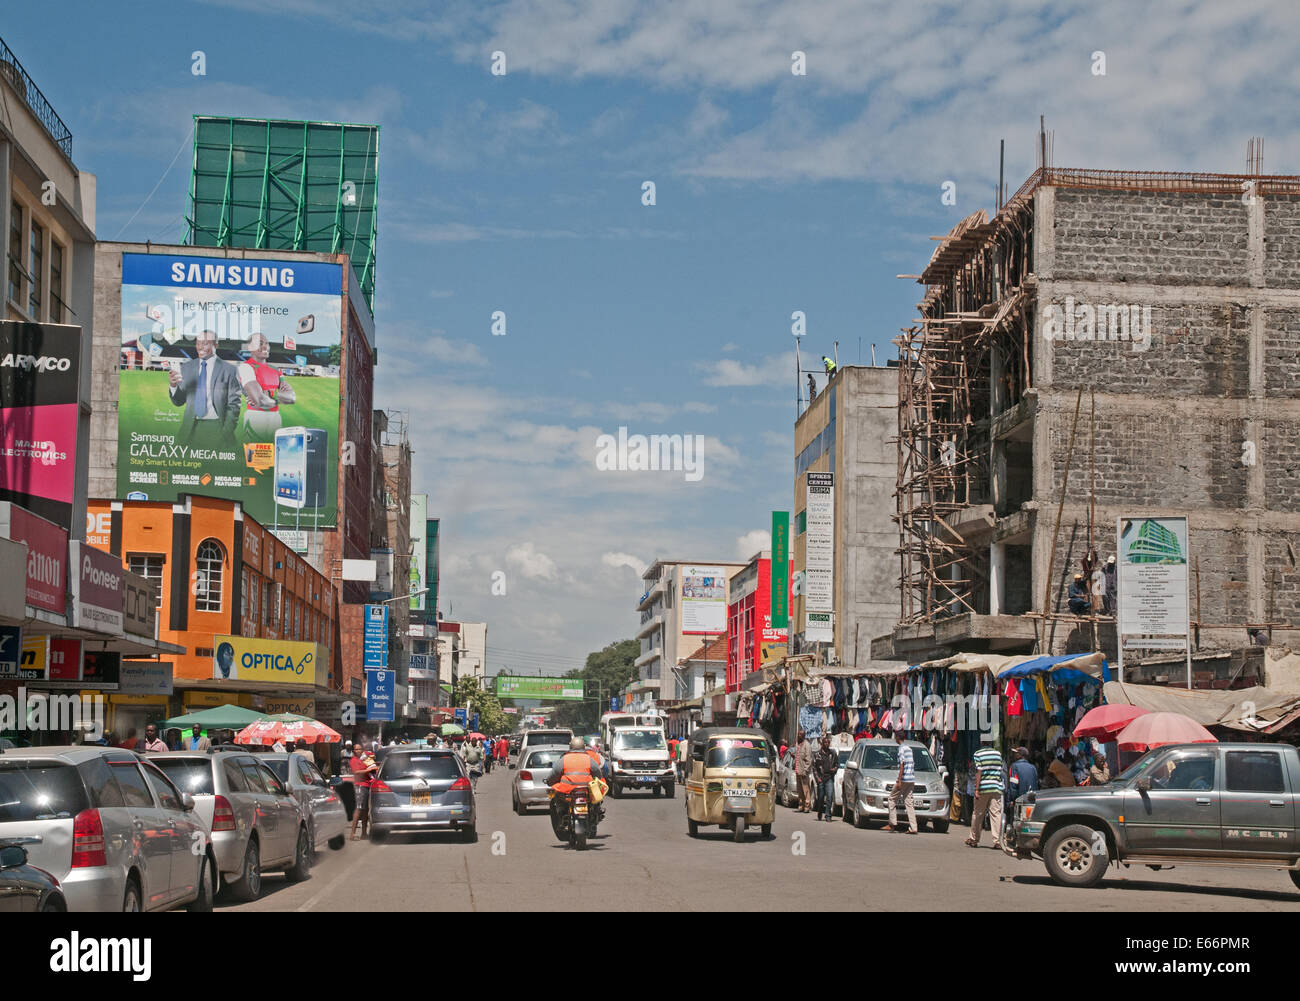 Personnes et de la circulation sur l'avenue Kenyatta Nakuru Kenya Afrique de l'Est avec des panneaux publicitaires et des boutiques taxi à trois roues Piaggio Ape Banque D'Images